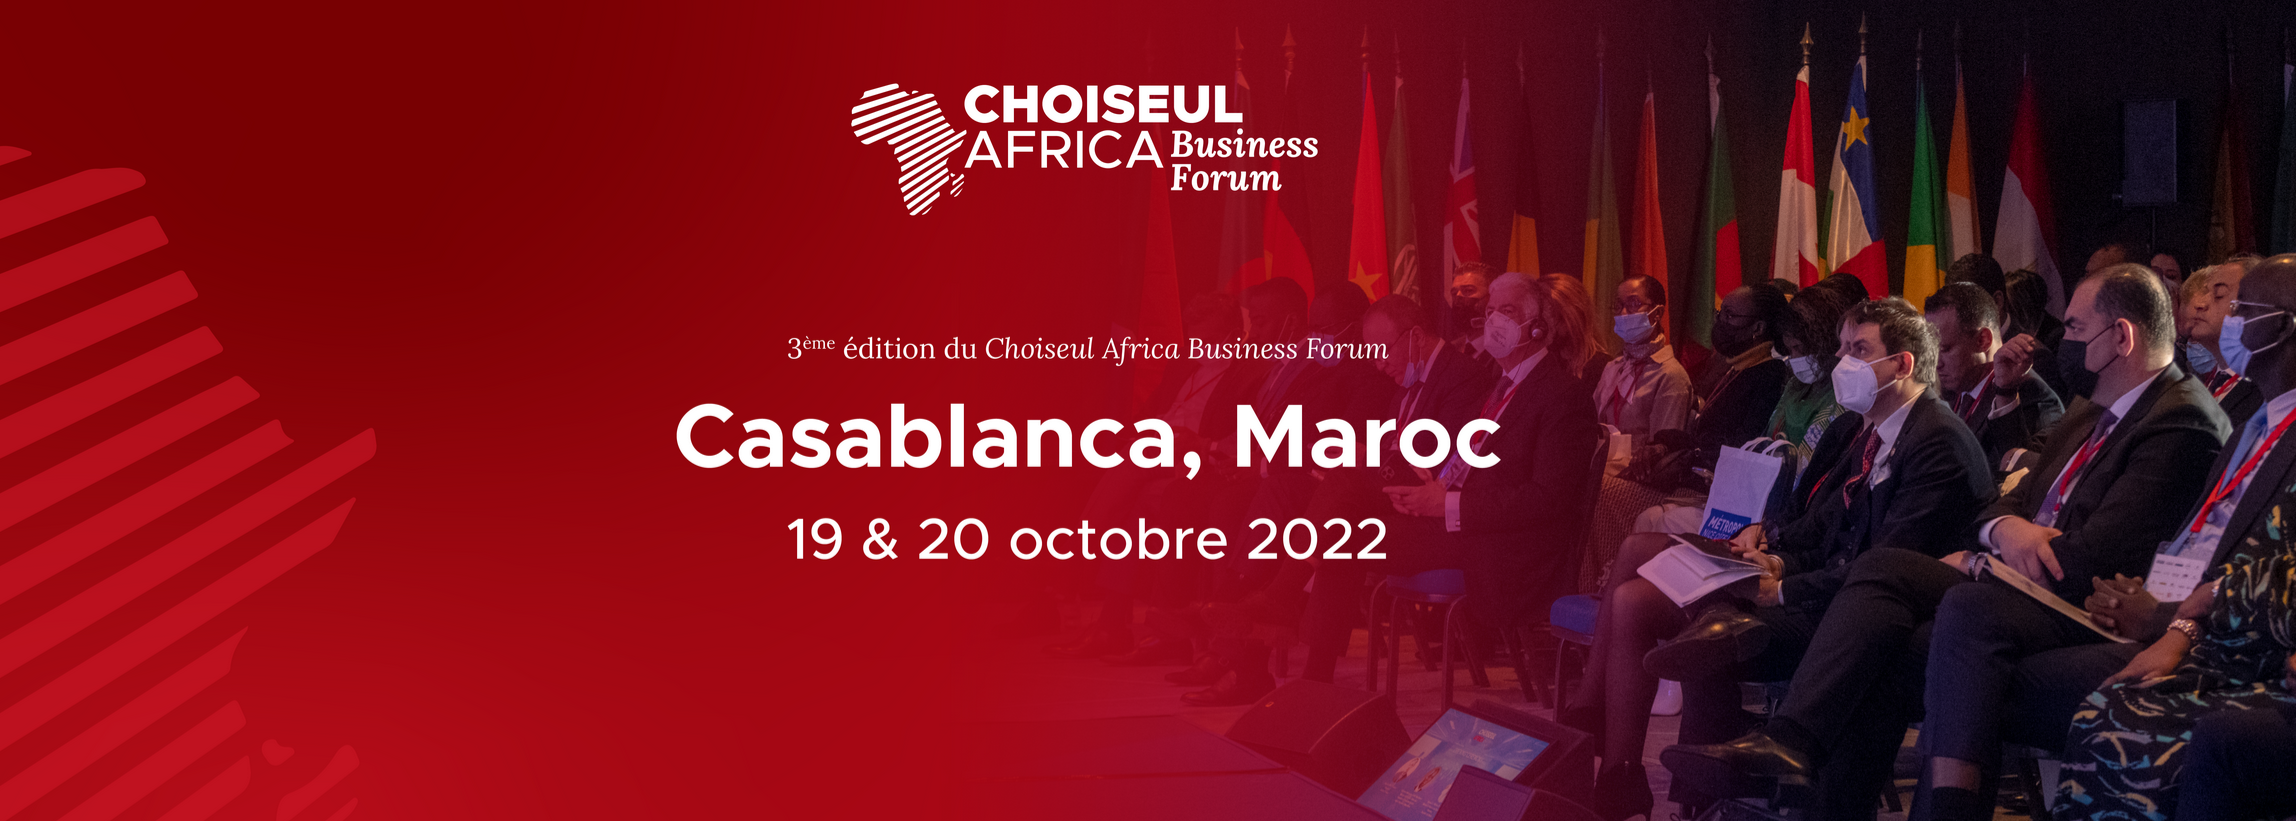 La 3e Édition du Choiseul Africa Business Forum se déroulera les 19 & 20 octobre 2022 à Casablanca